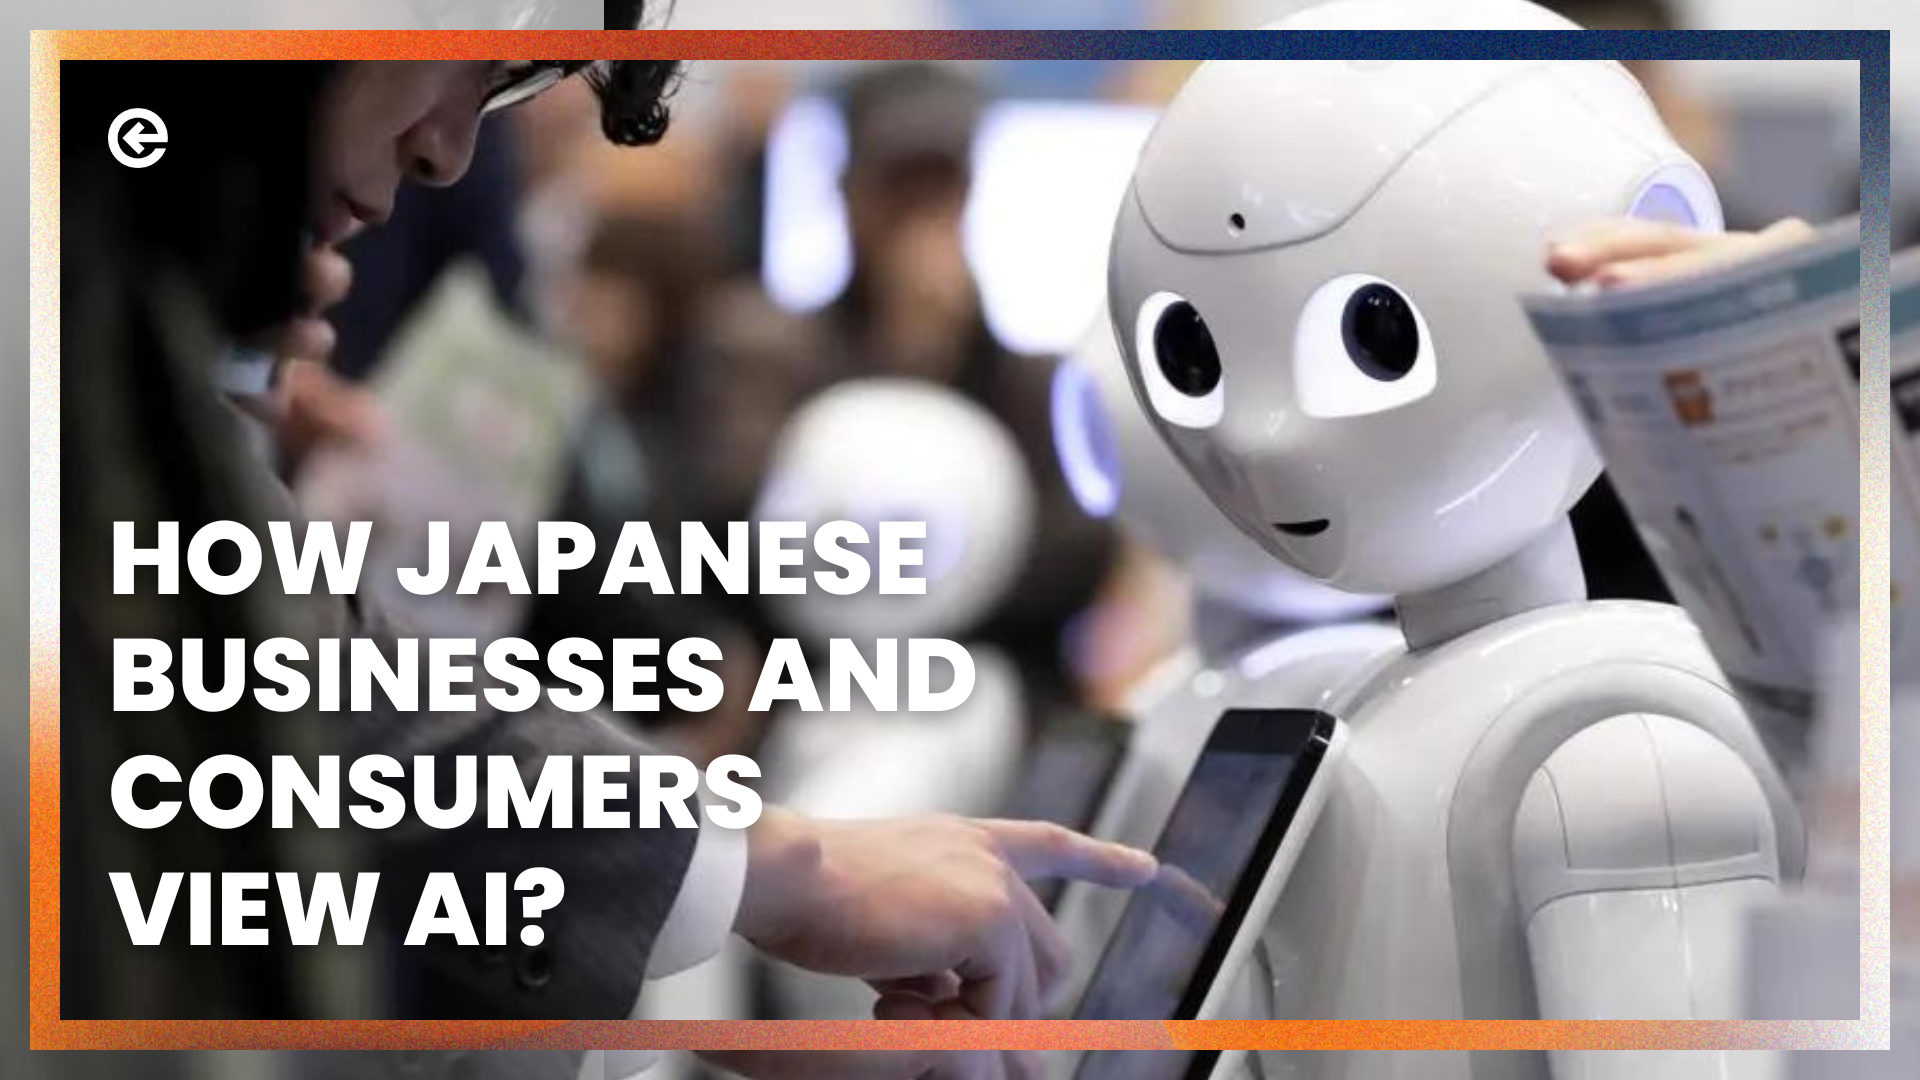 जापानी व्यवसाय और उपभोक्ता एआई को कैसे देखते हैं?